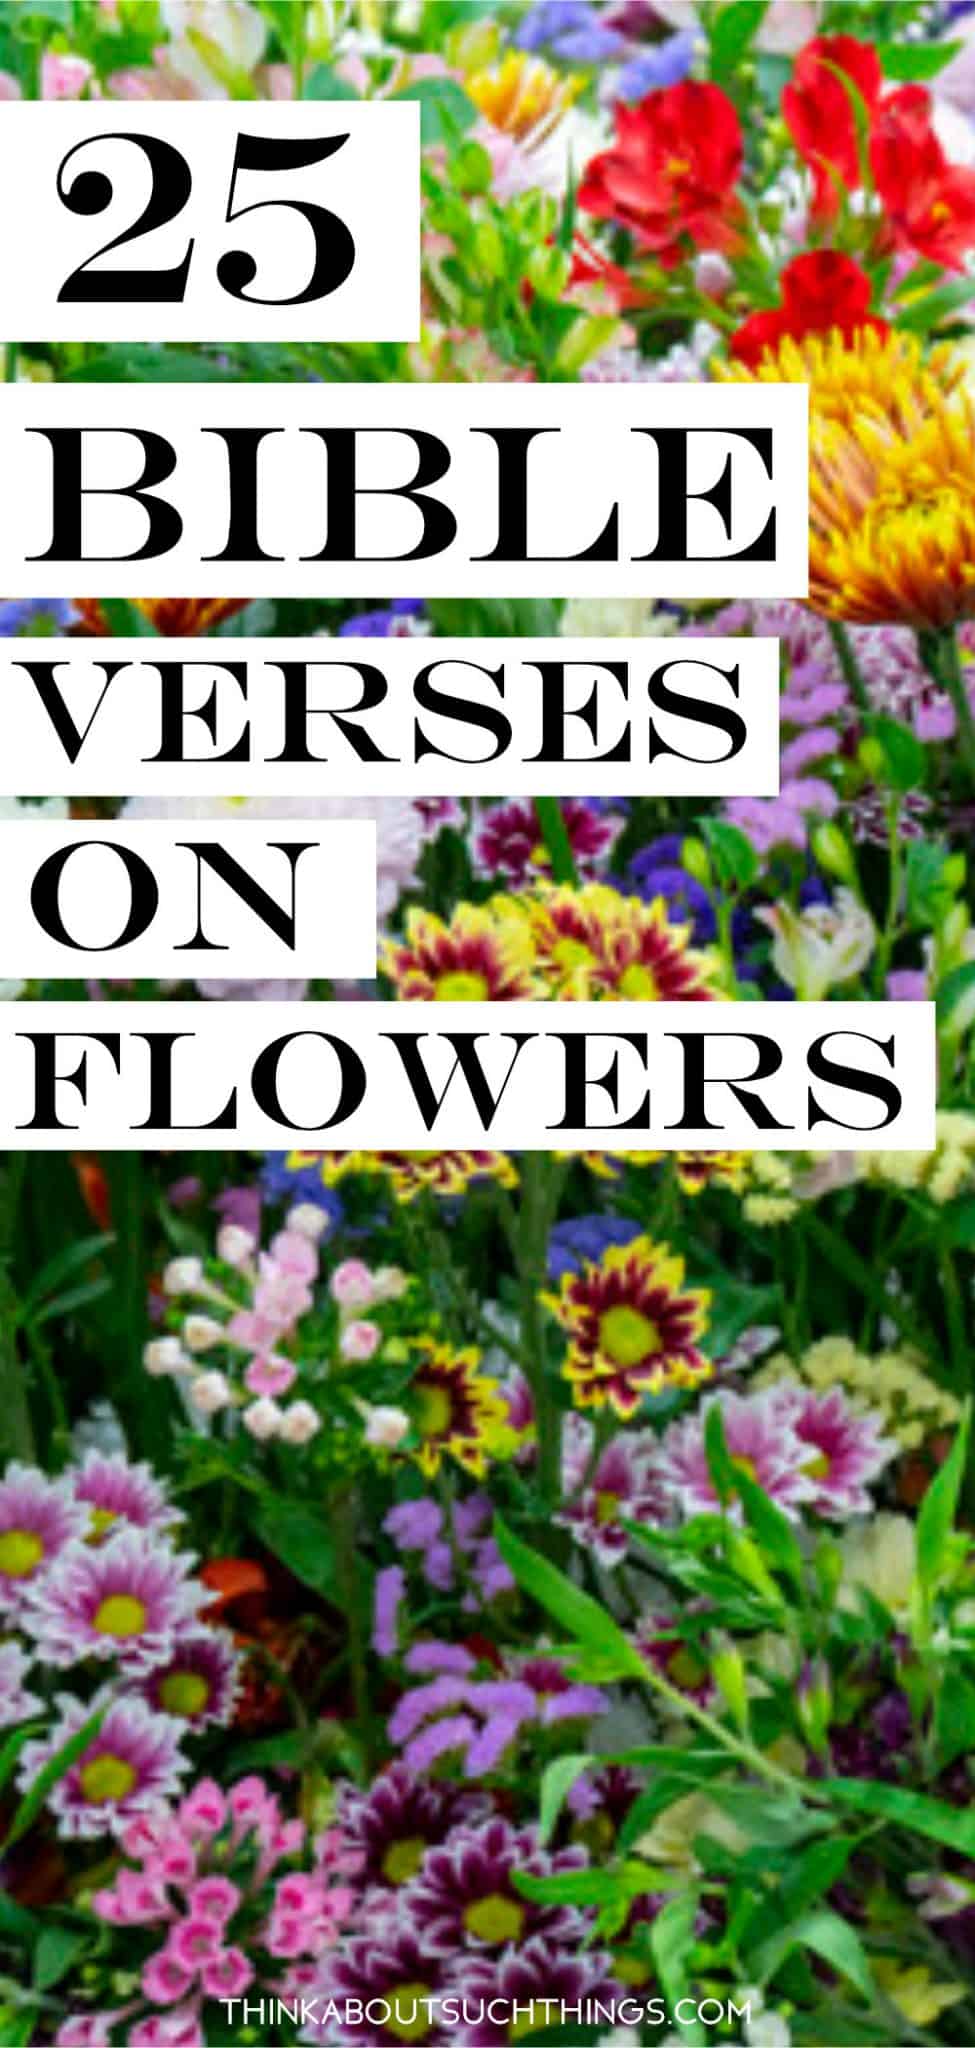 25 versets bibliques intéressants sur les fleurs - Romantikes